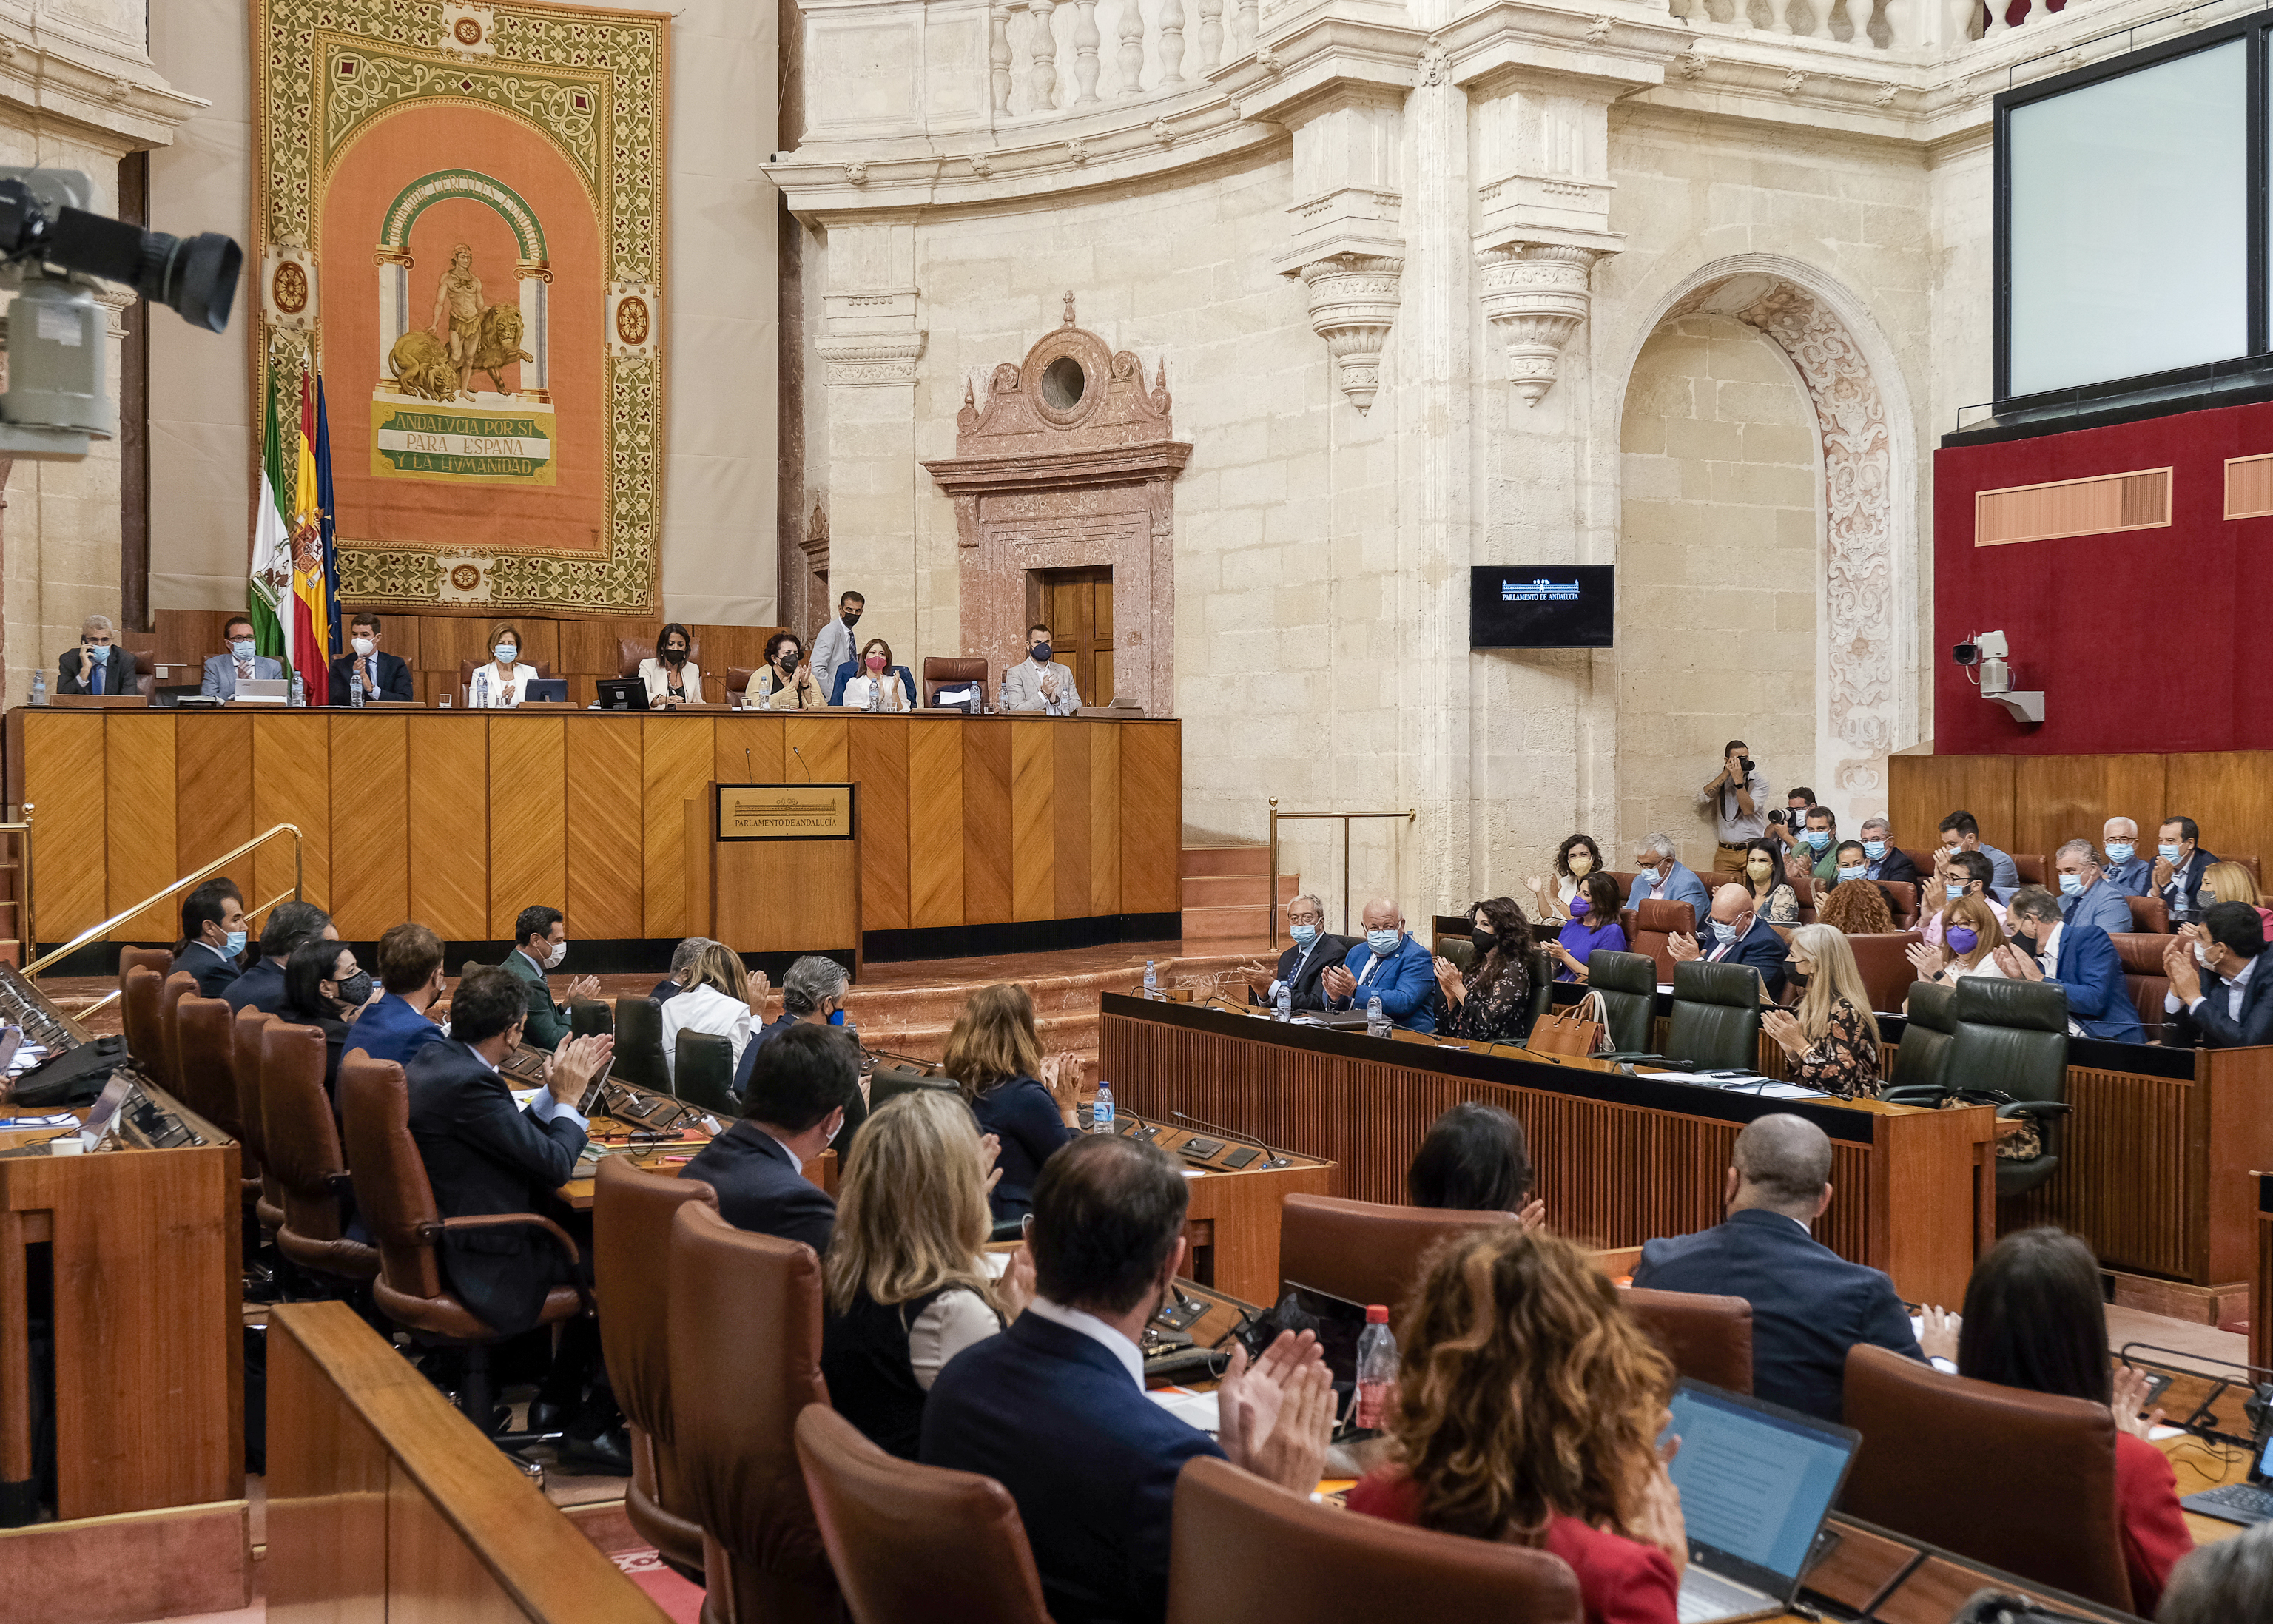  El Parlamento de Andaluca aplaude tras la lectura de la declaracin institucional leda en reconocimiento de la provincia de Huelva 